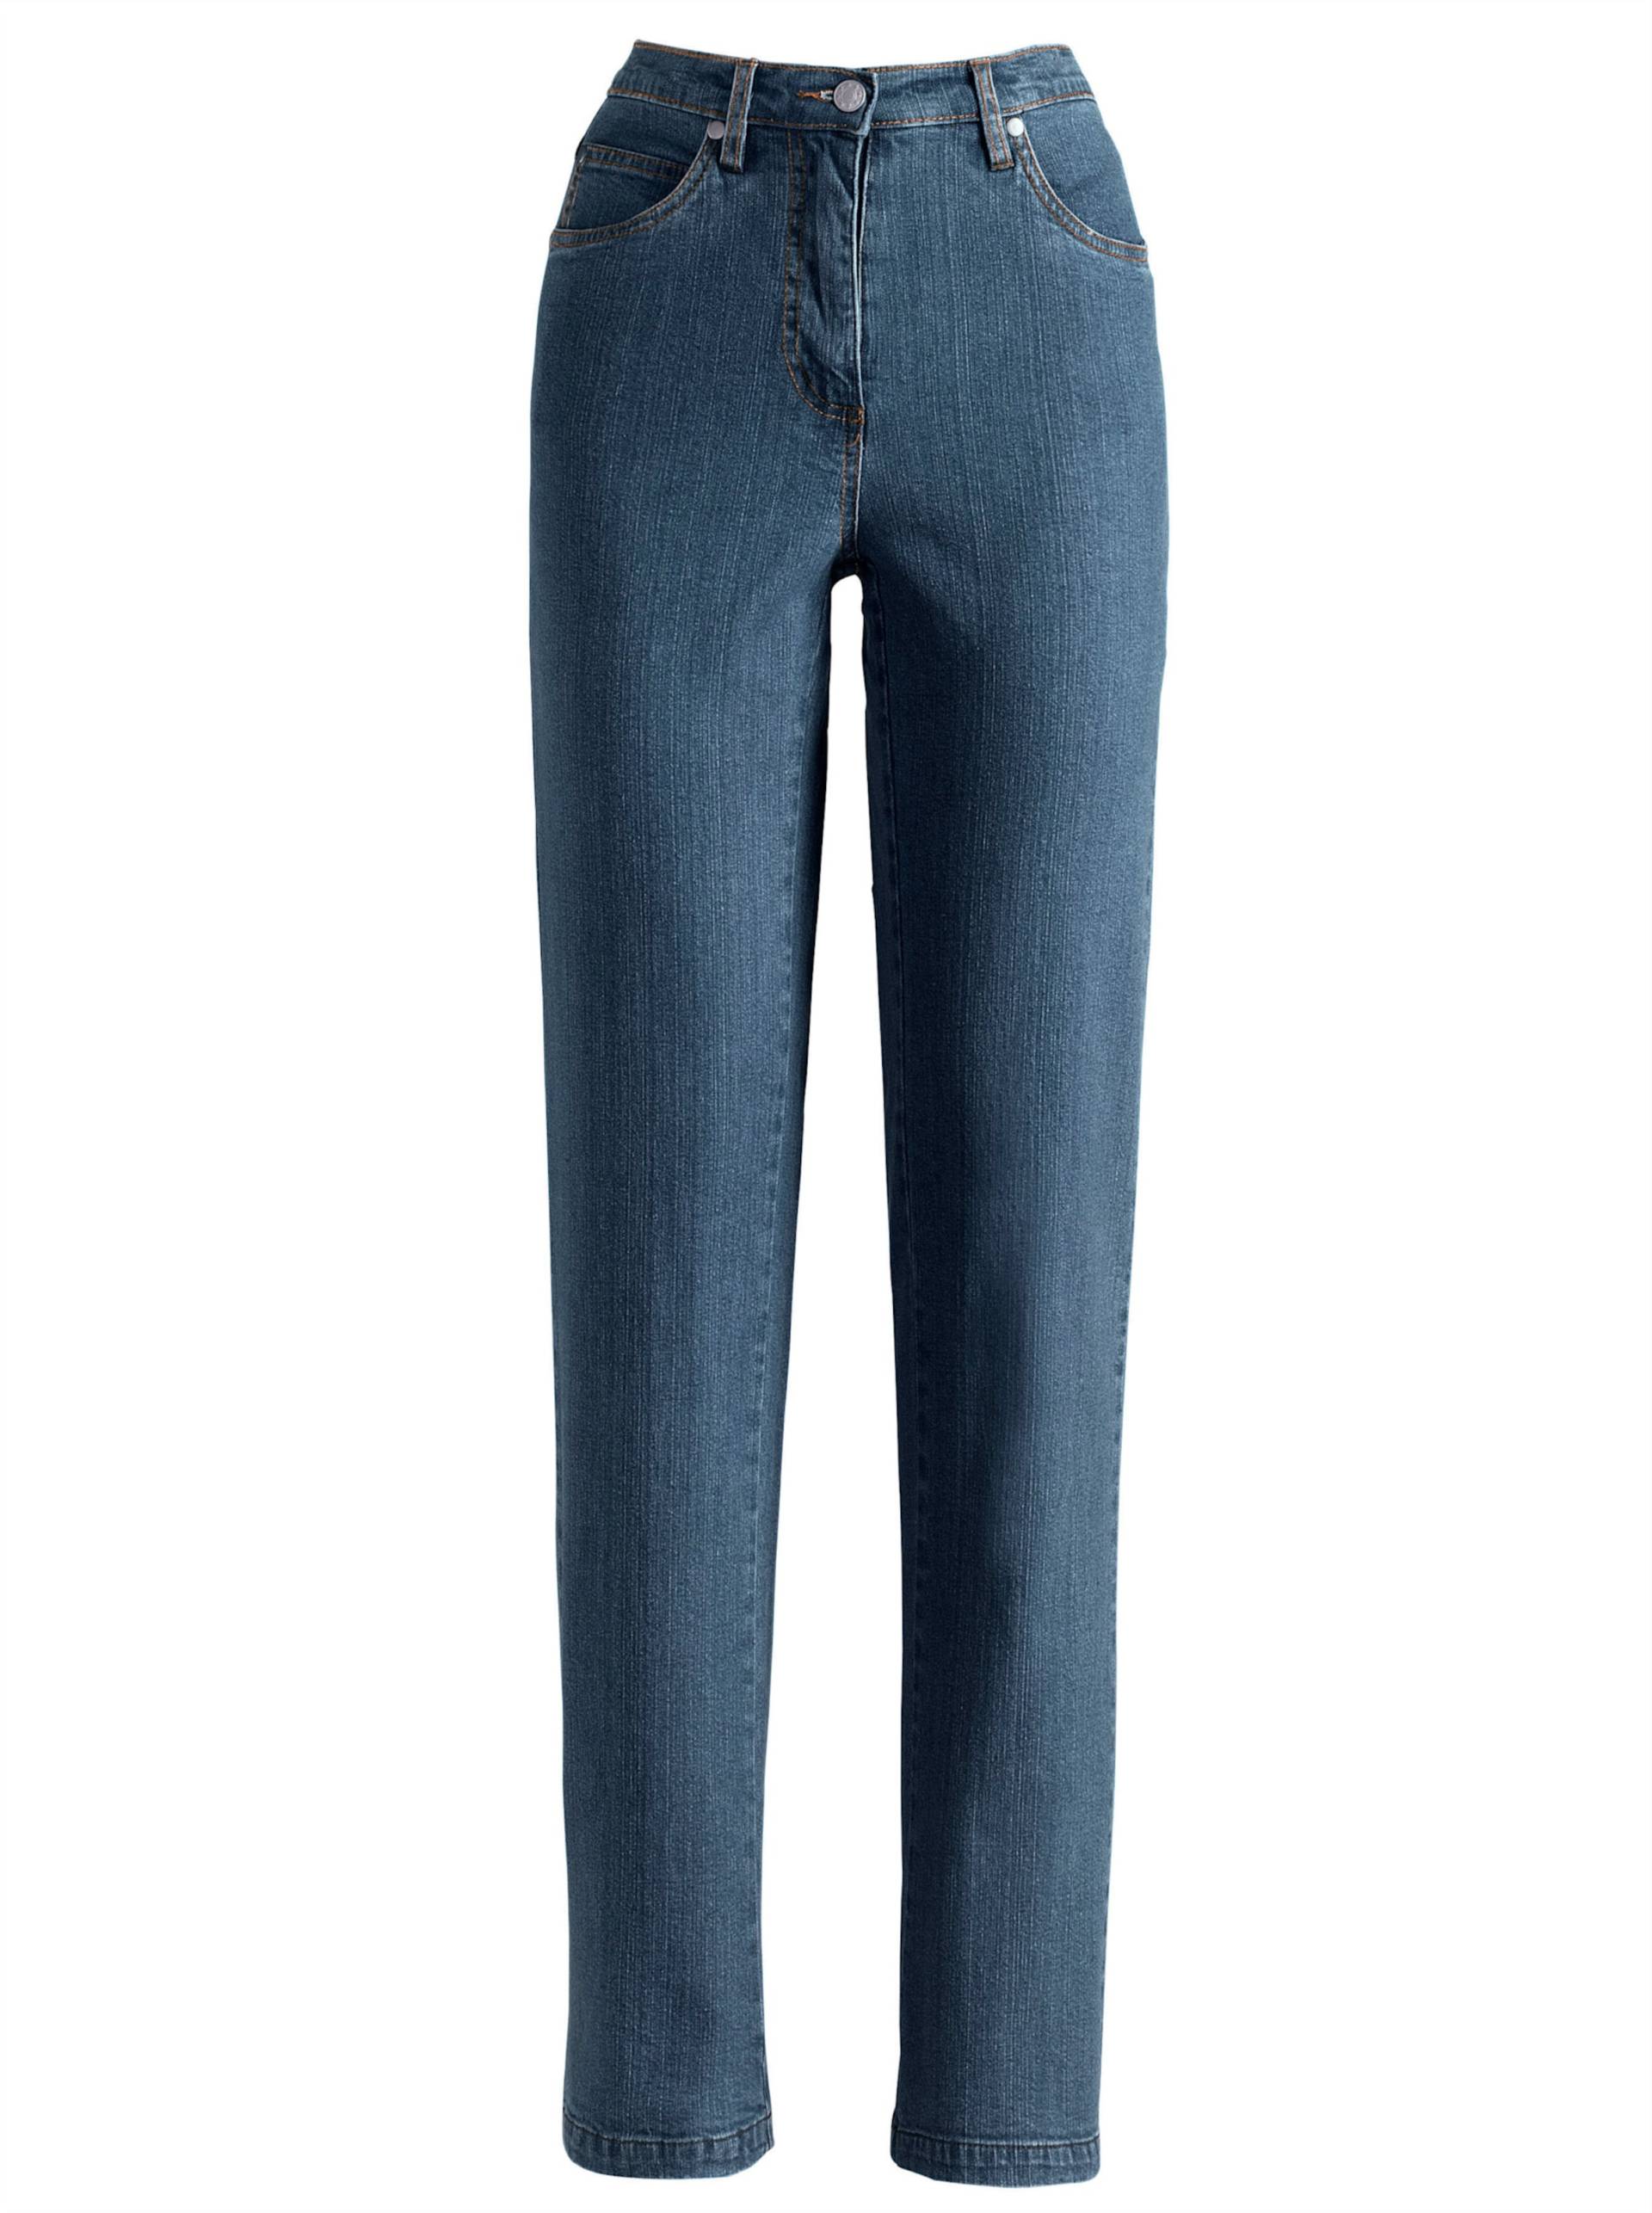 5-Pocket-Jeans in blue-stone-washed von heine